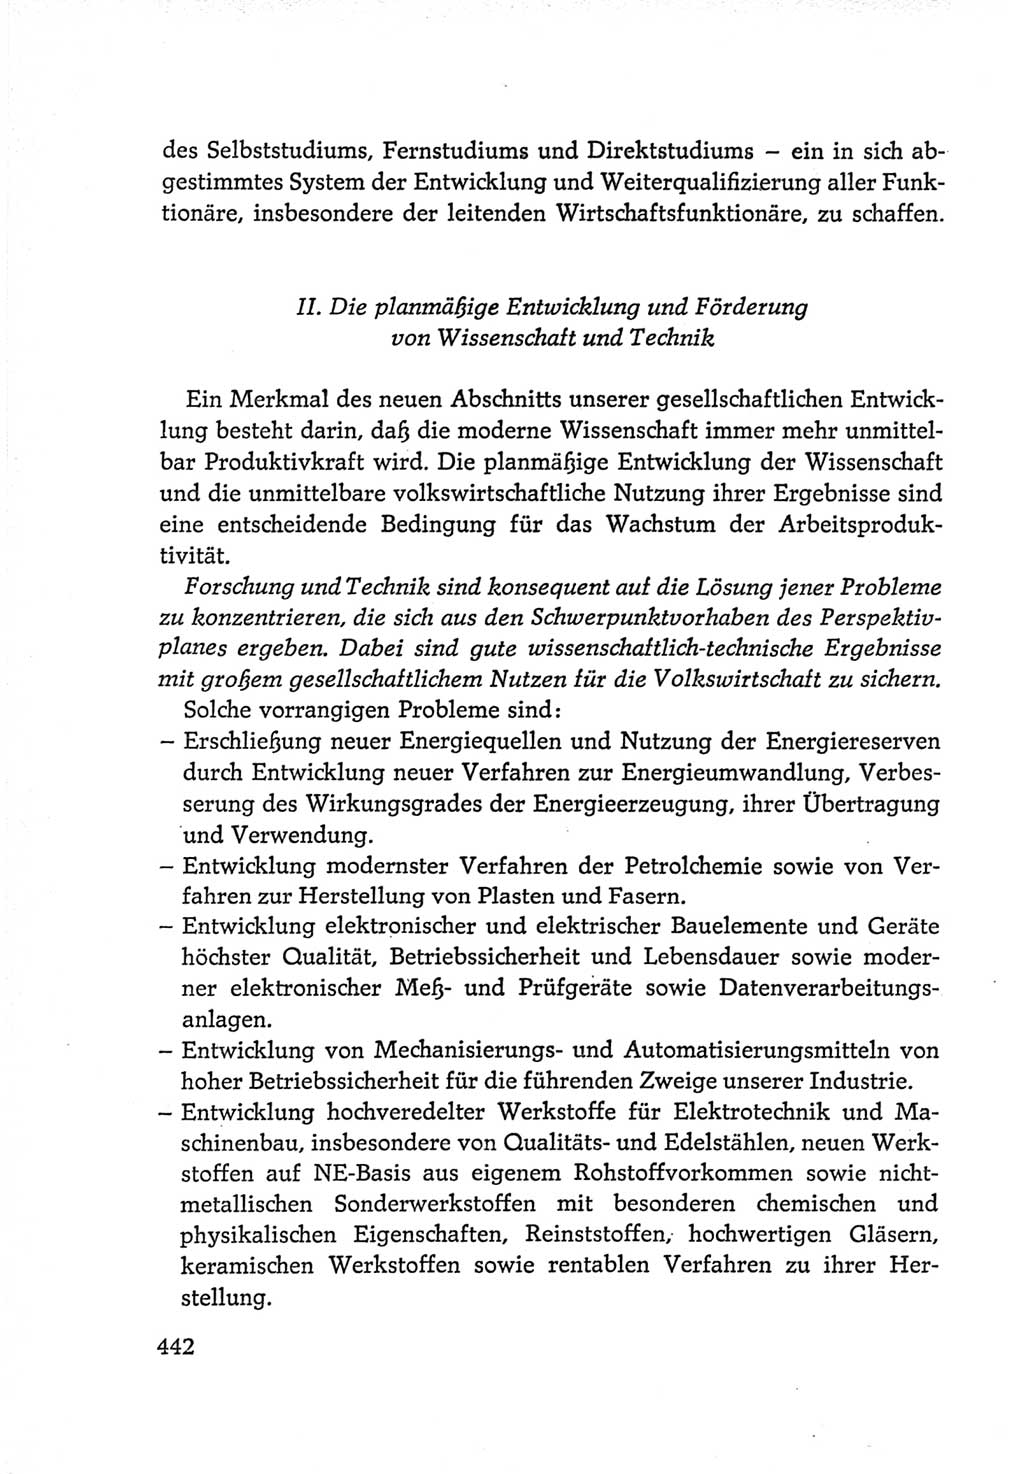 Protokoll der Verhandlungen des Ⅵ. Parteitages der Sozialistischen Einheitspartei Deutschlands (SED) [Deutsche Demokratische Republik (DDR)] 1963, Band Ⅳ, Seite 442 (Prot. Verh. Ⅵ. PT SED DDR 1963, Bd. Ⅳ, S. 442)